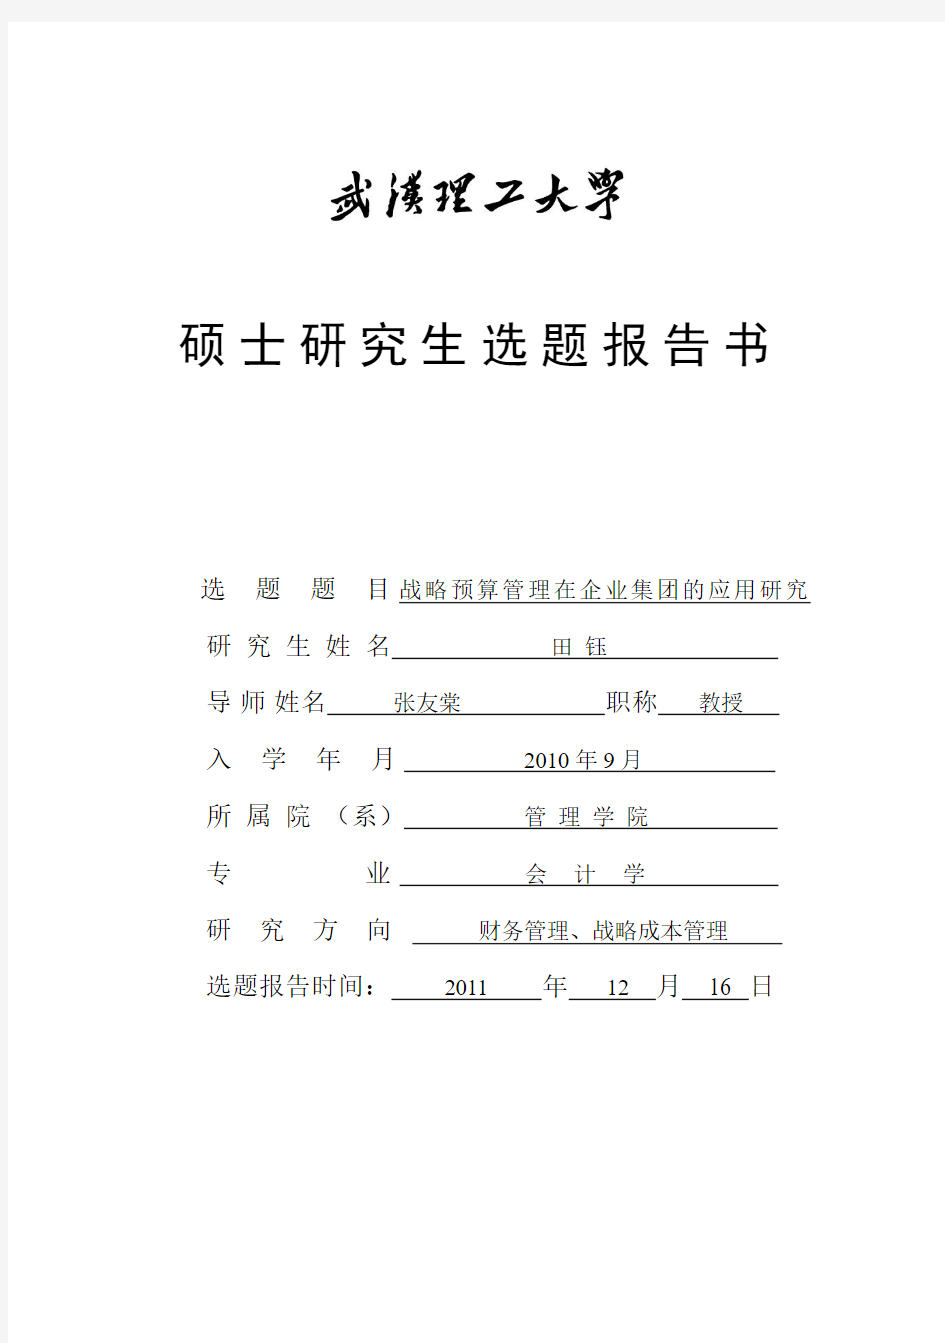 武汉理工大学开题报告 --定稿